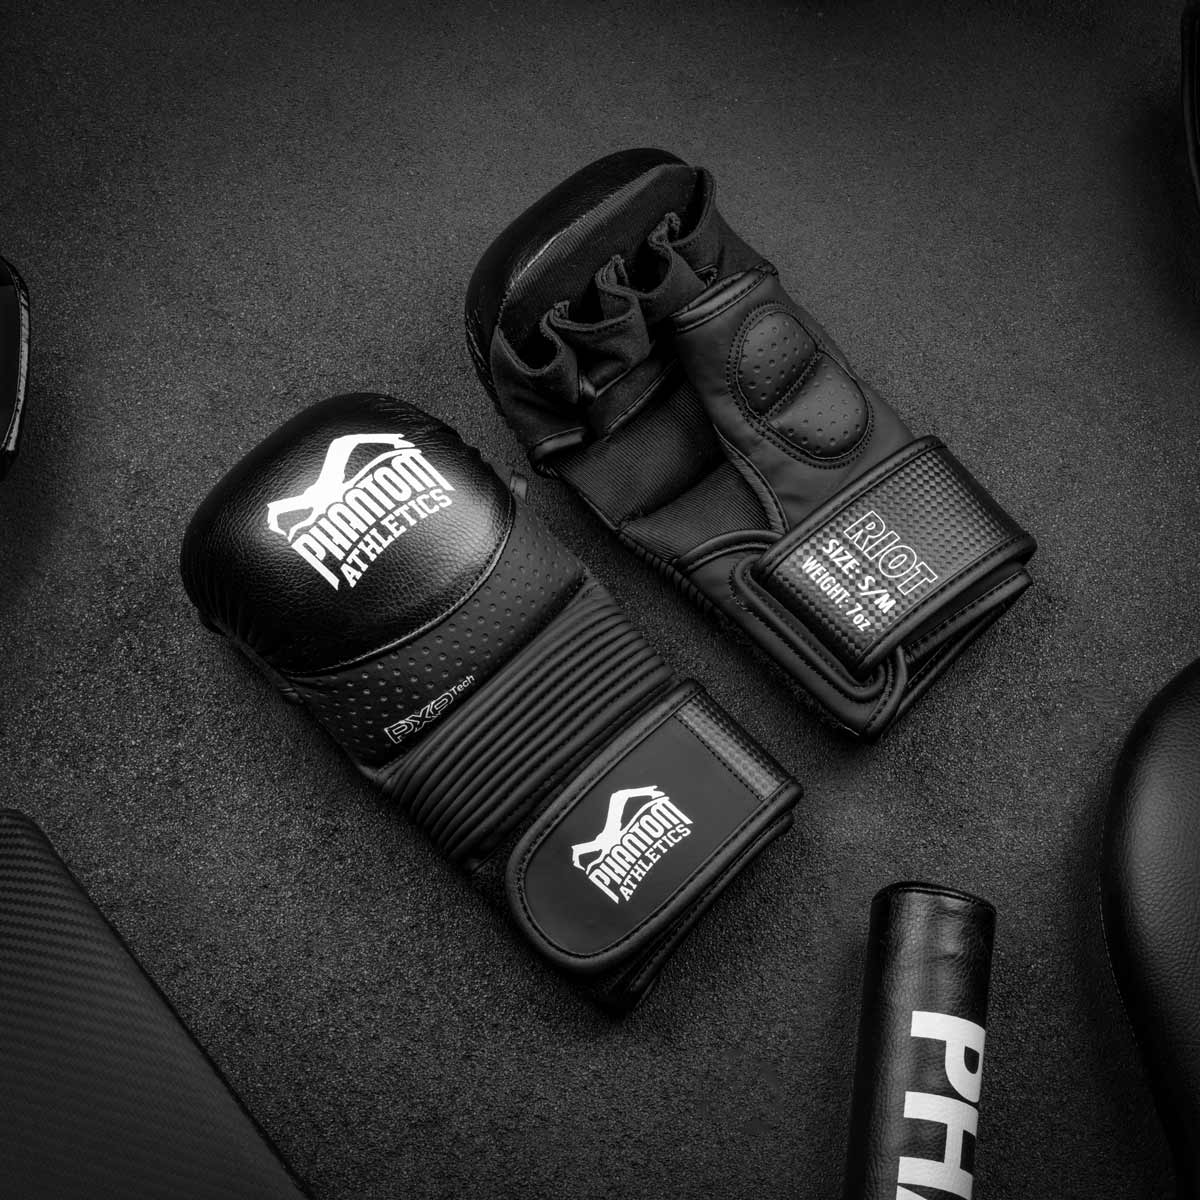 Die Phantom RIOT PRO MMA Sparringshandschuhe. Ideal für dein Kampfsport Training und Amateur Wettkämpfe. Die hochwertigsten und sichersten MMA Handschuhe auf dem Markt.  Perfekte Passform und überragende Qualität für Training und Sparring. Ein einzigartiger Look gepaart mit schlichtem Design und überragender Performance.